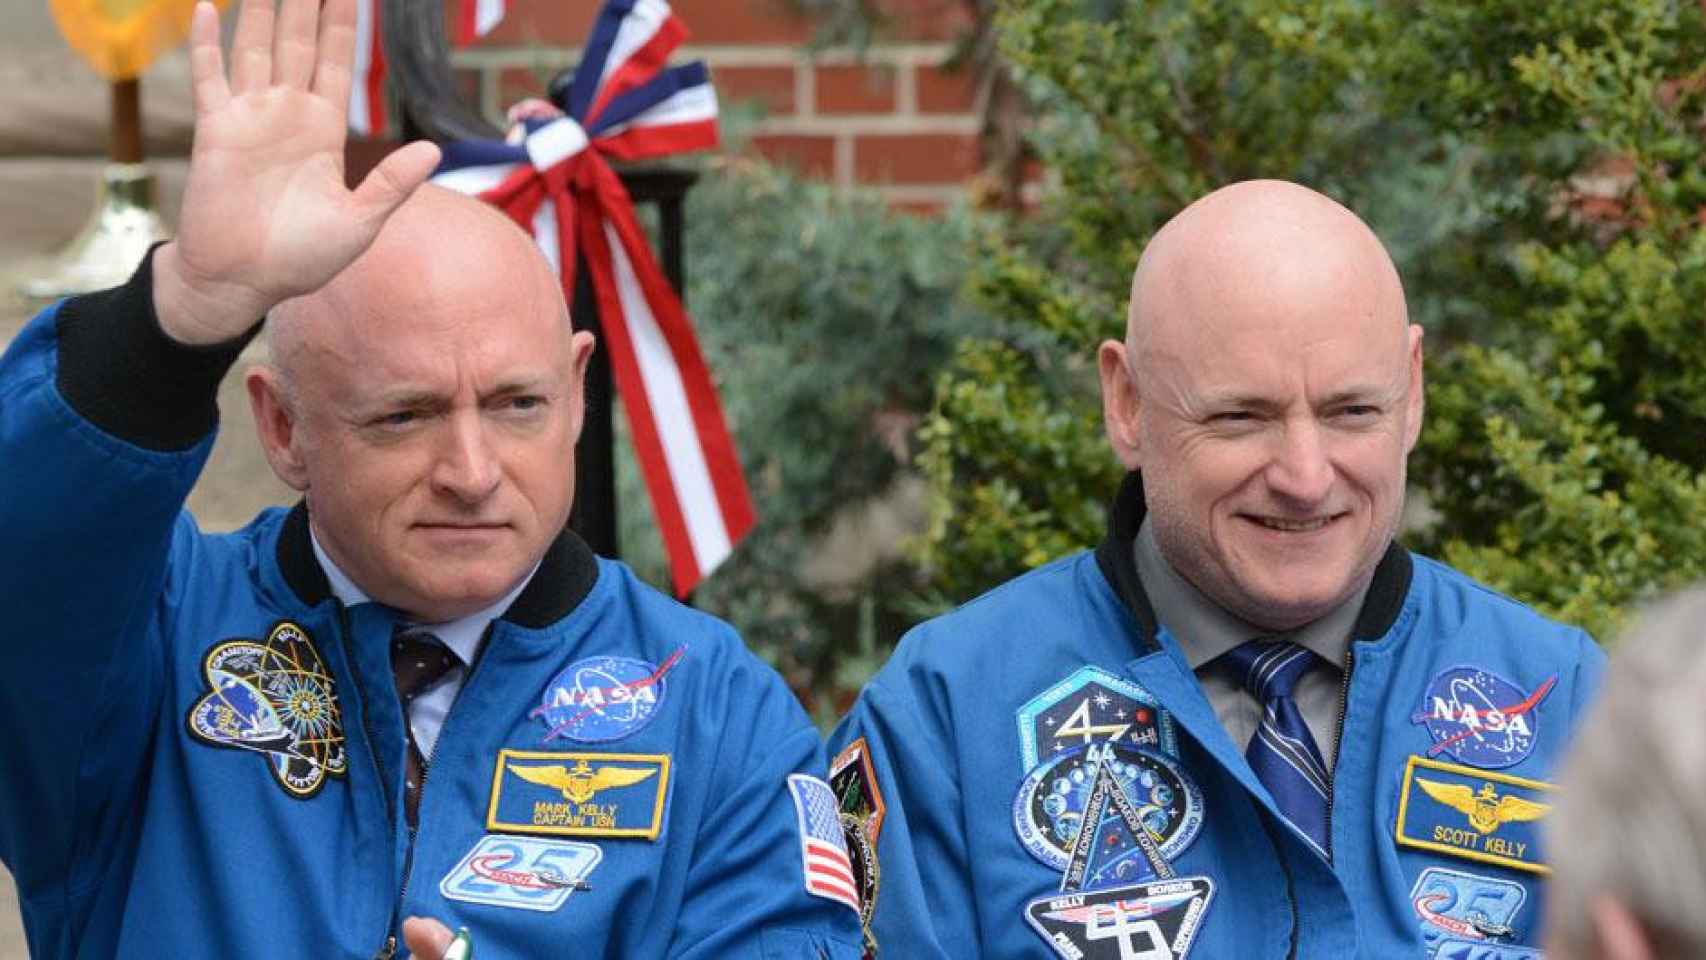 Mark y Scott Kelly, sujetos del estudio de cómo afecta el espacio en el cuerpo / NASA